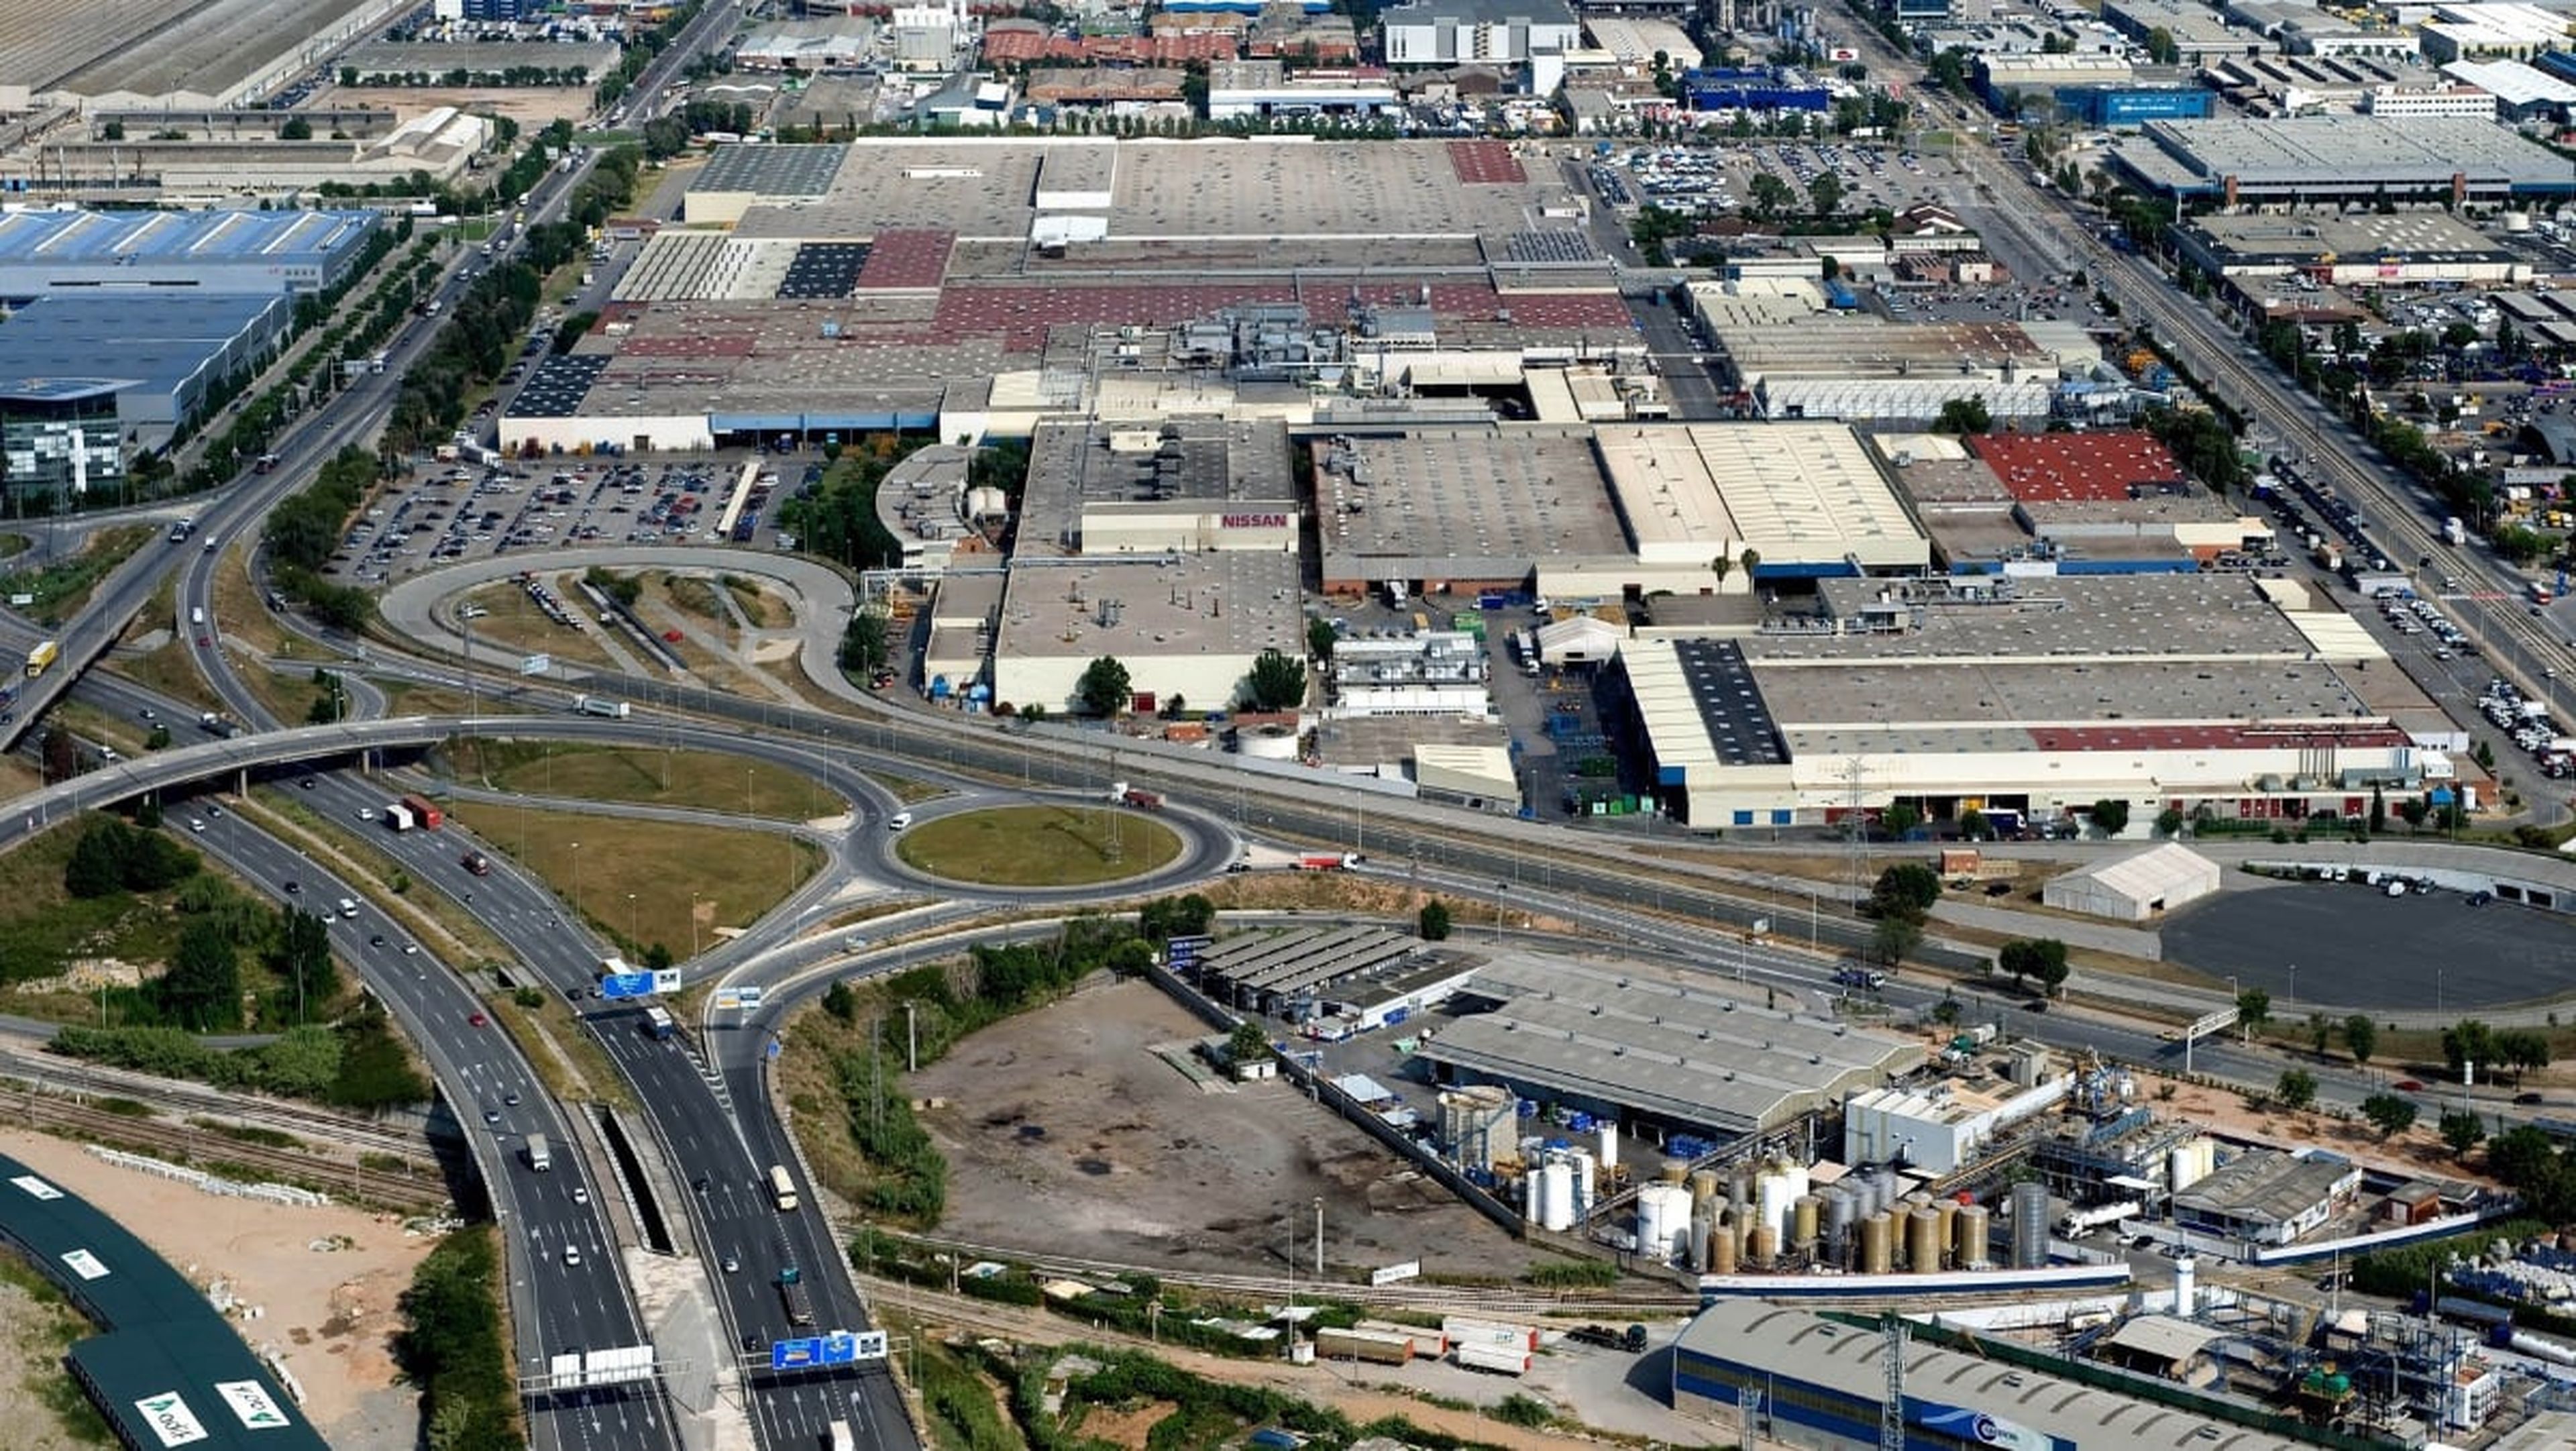 Vista aérea de la fábrica de Nissan en Barcelona